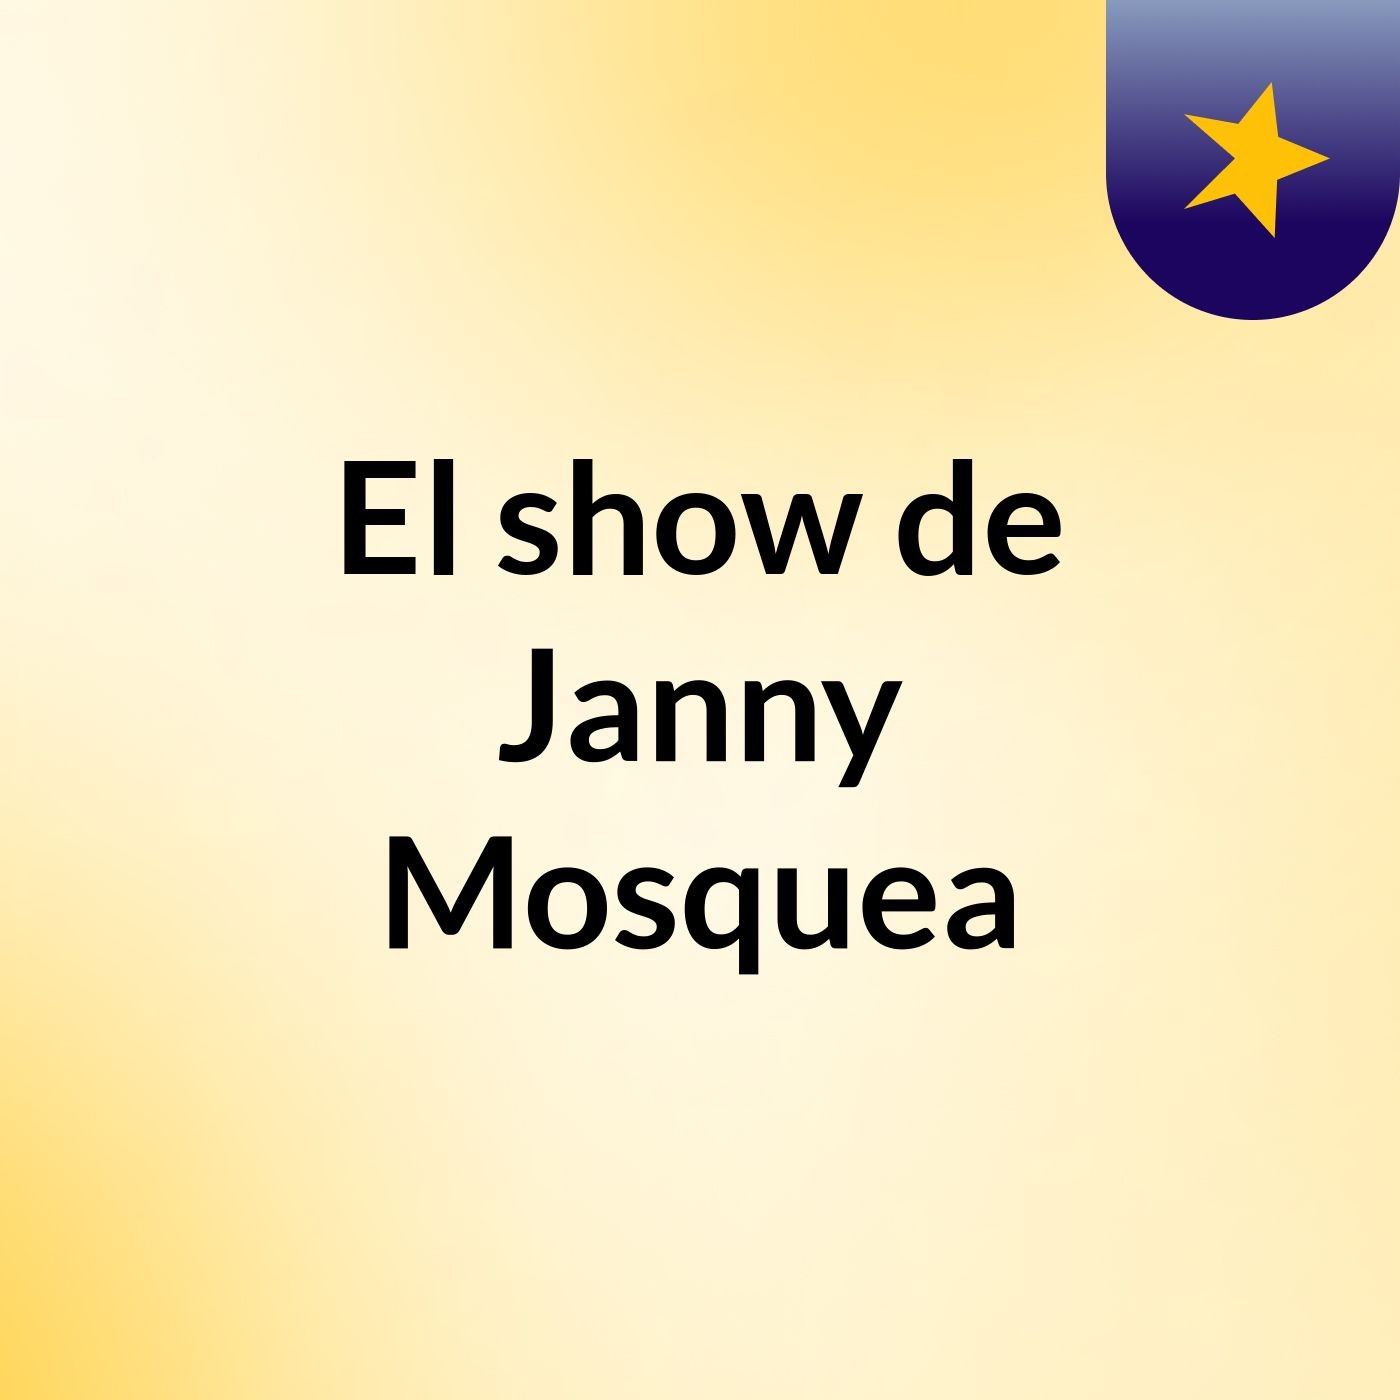 El show de Janny Mosquea